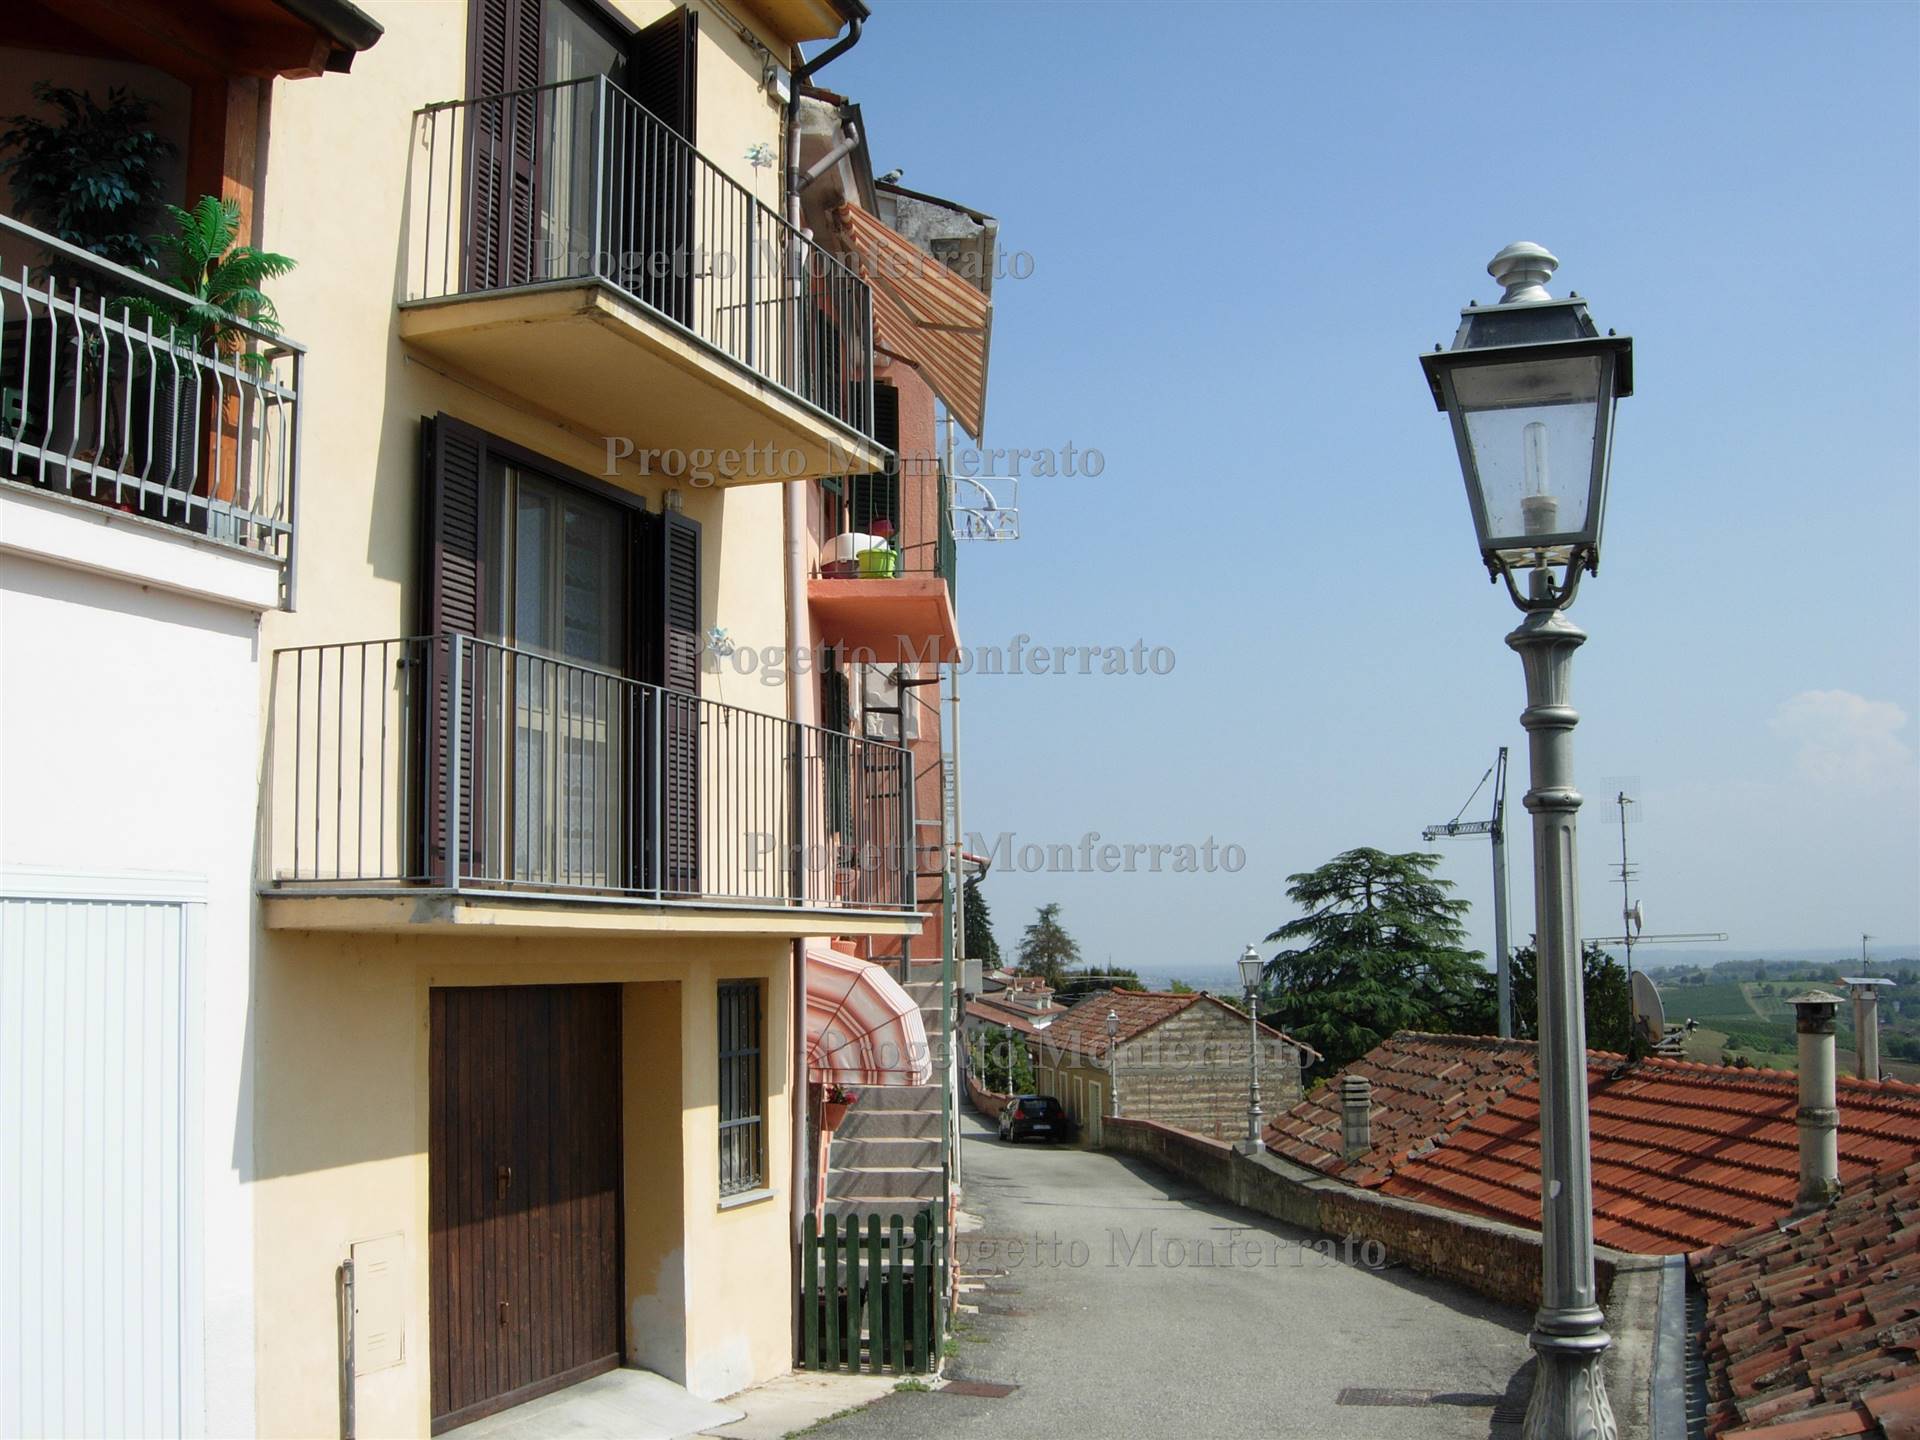 Casa singola in San Giorgio Monferrato a San Giorgio Monferrato